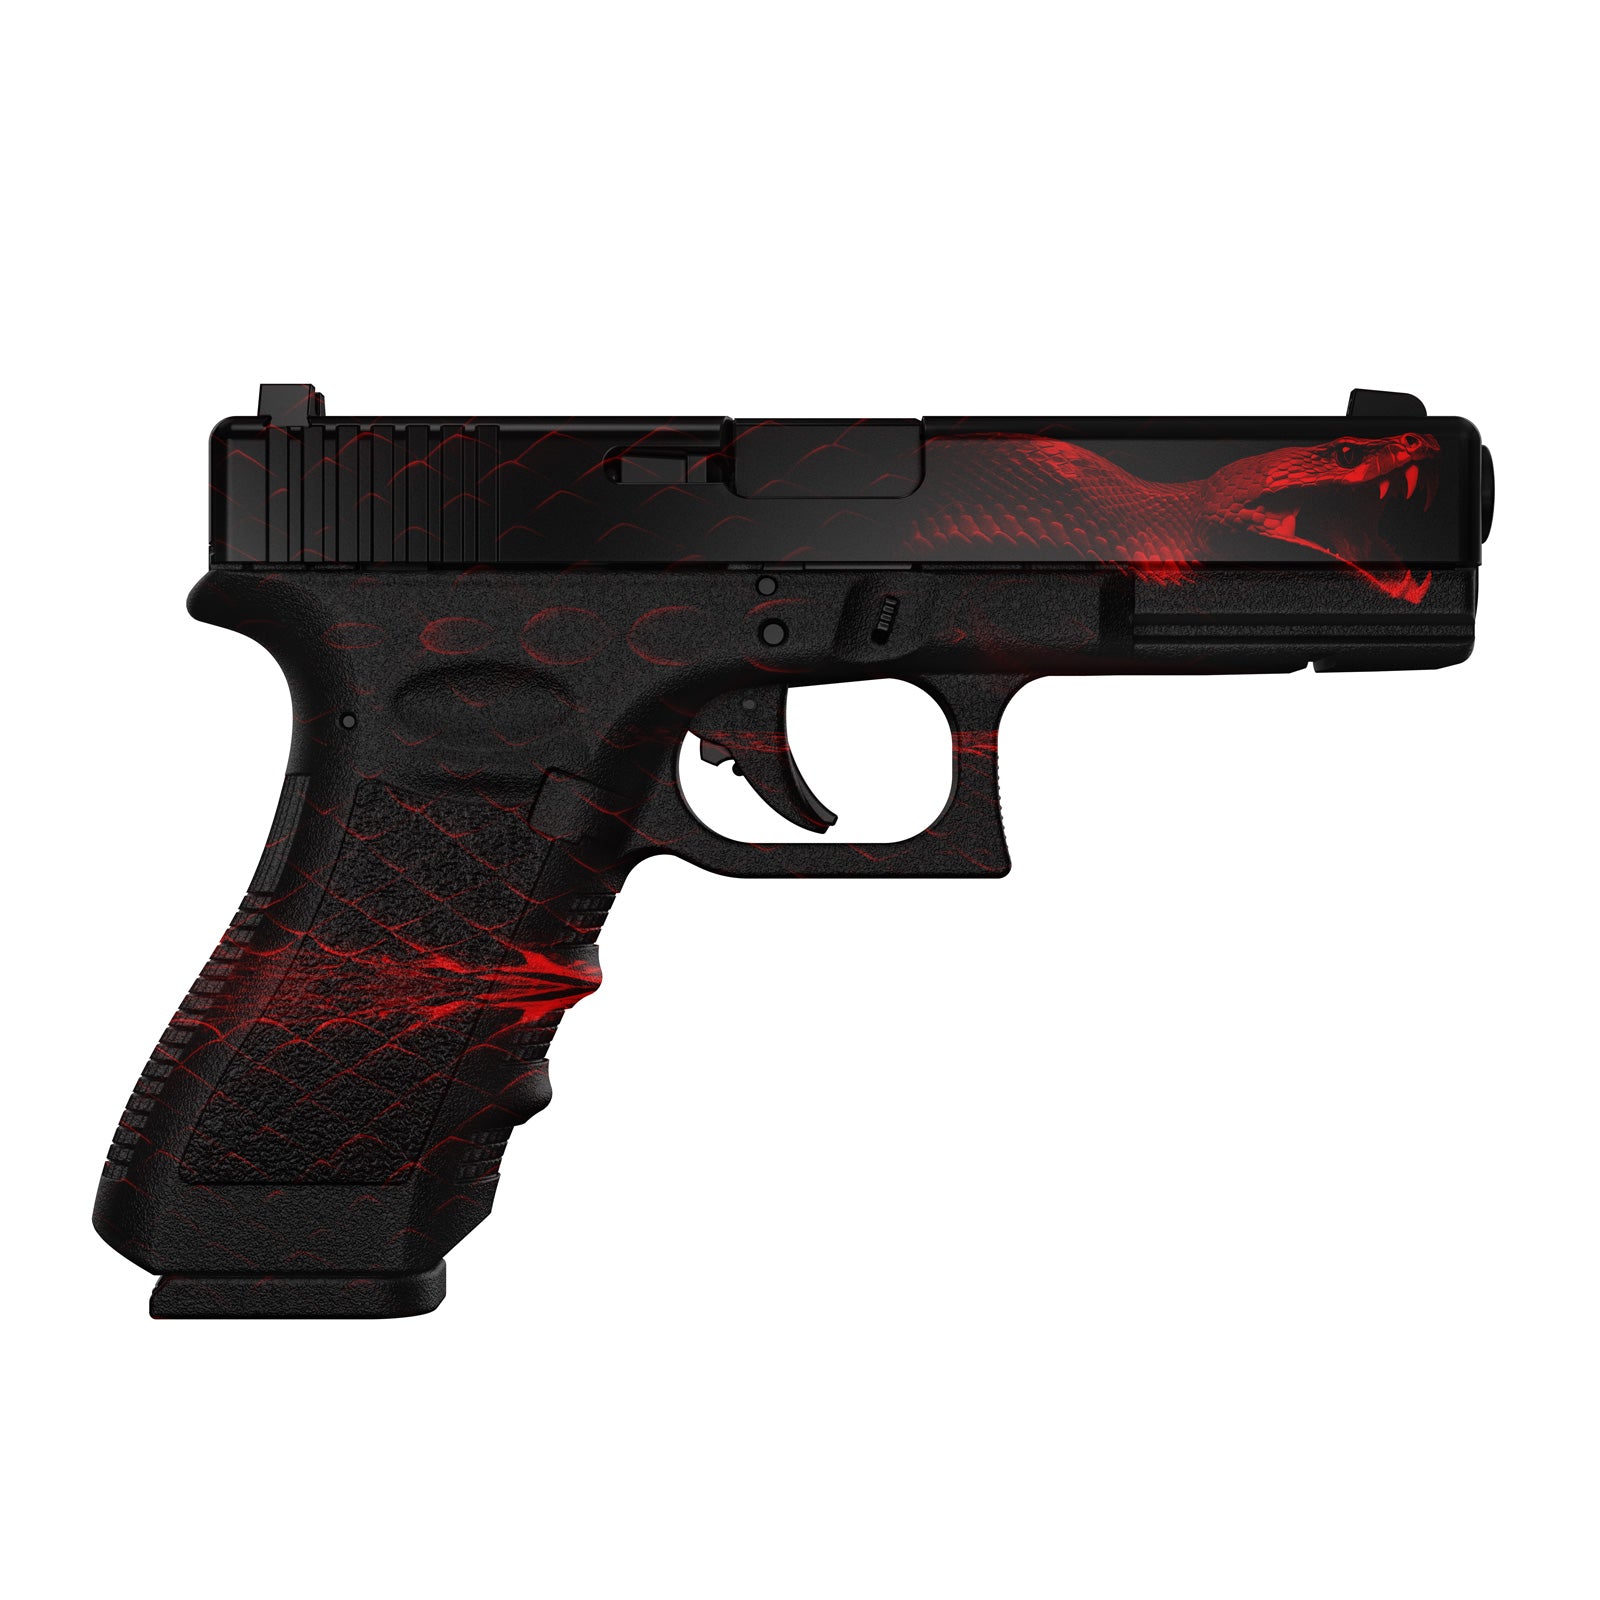 Gun Skin Premium Vinyl Pistol Wrap - Red Snake - WrapMyGun Gun Skins & AR-15 M4 Mag Skins